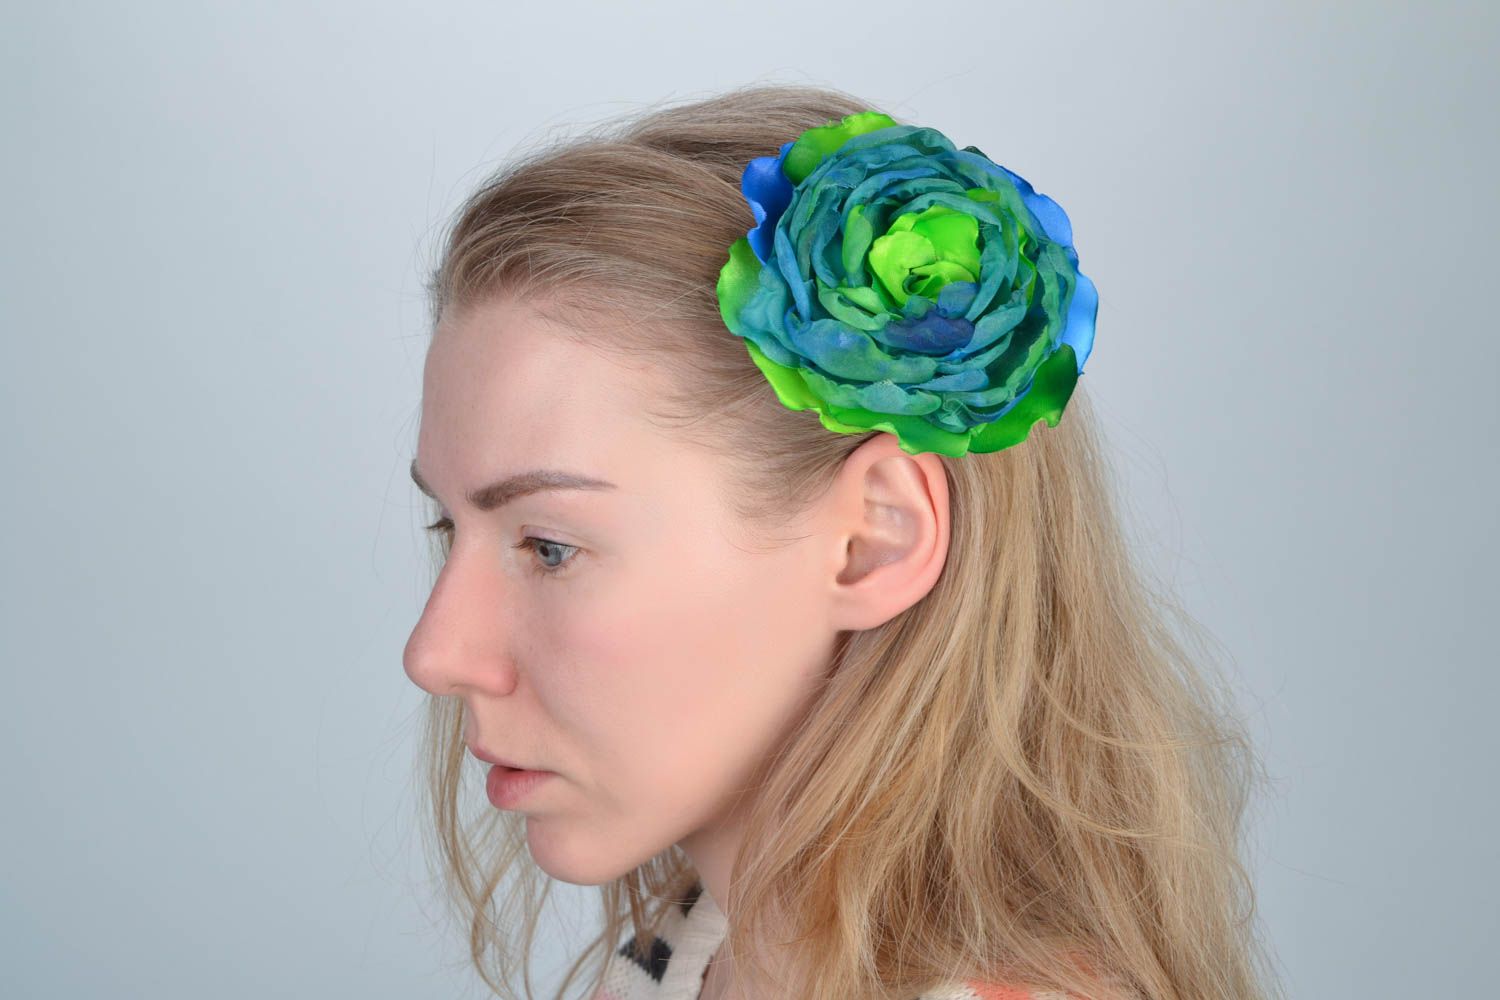 Яркая заколка для волос в виде цветка ручной работы синяя с зеленым авторская фото 1